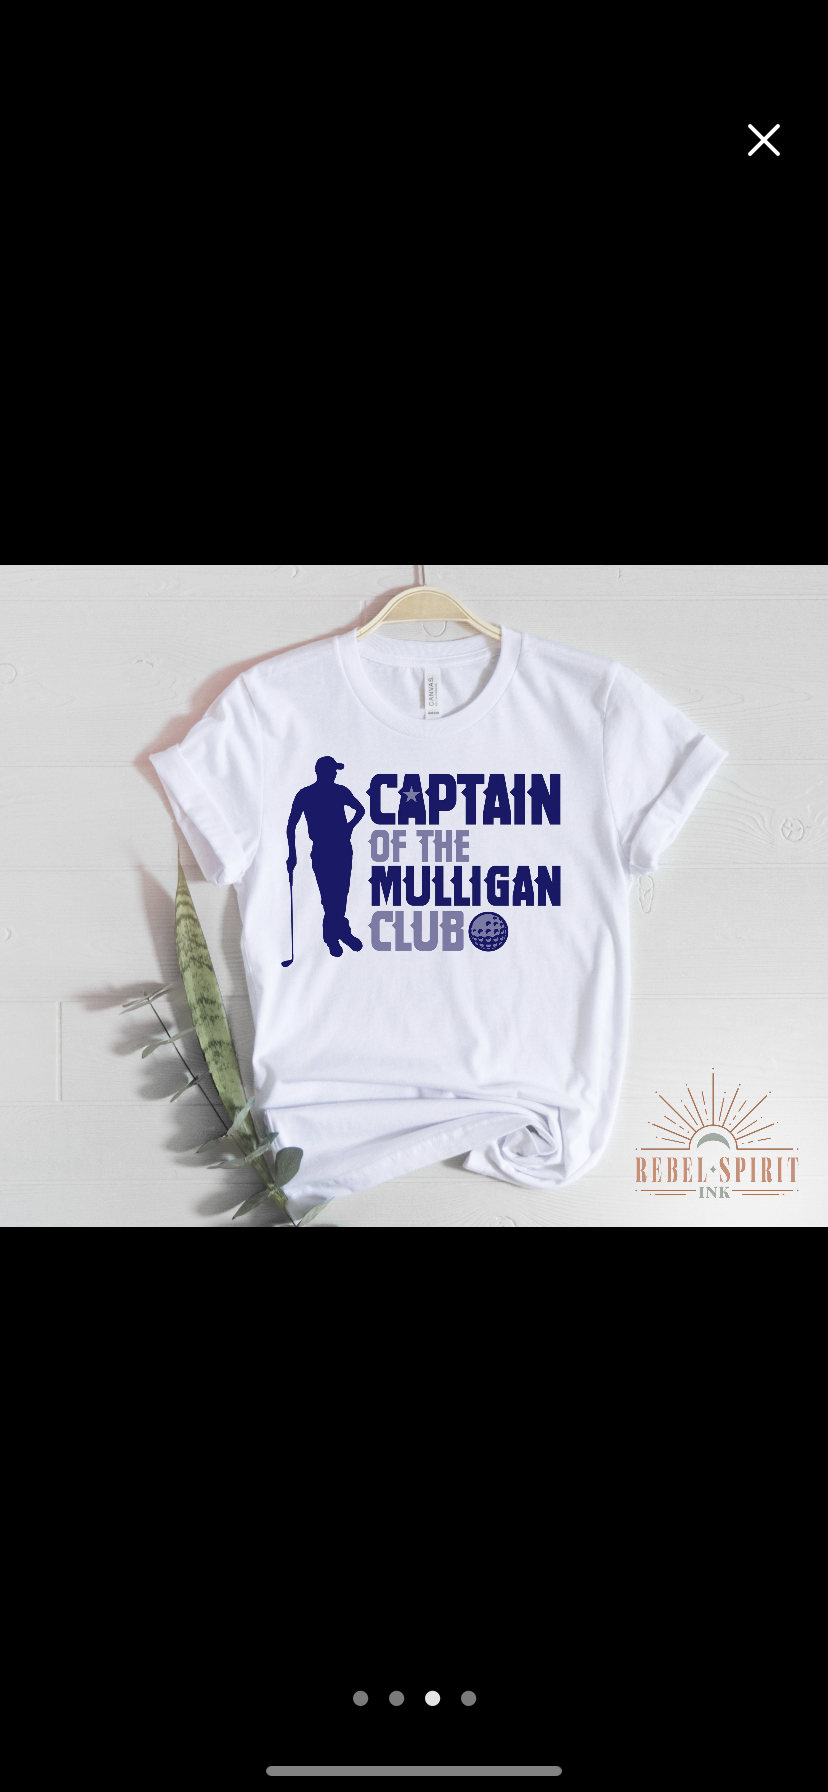 Captain of the Mulligan Club